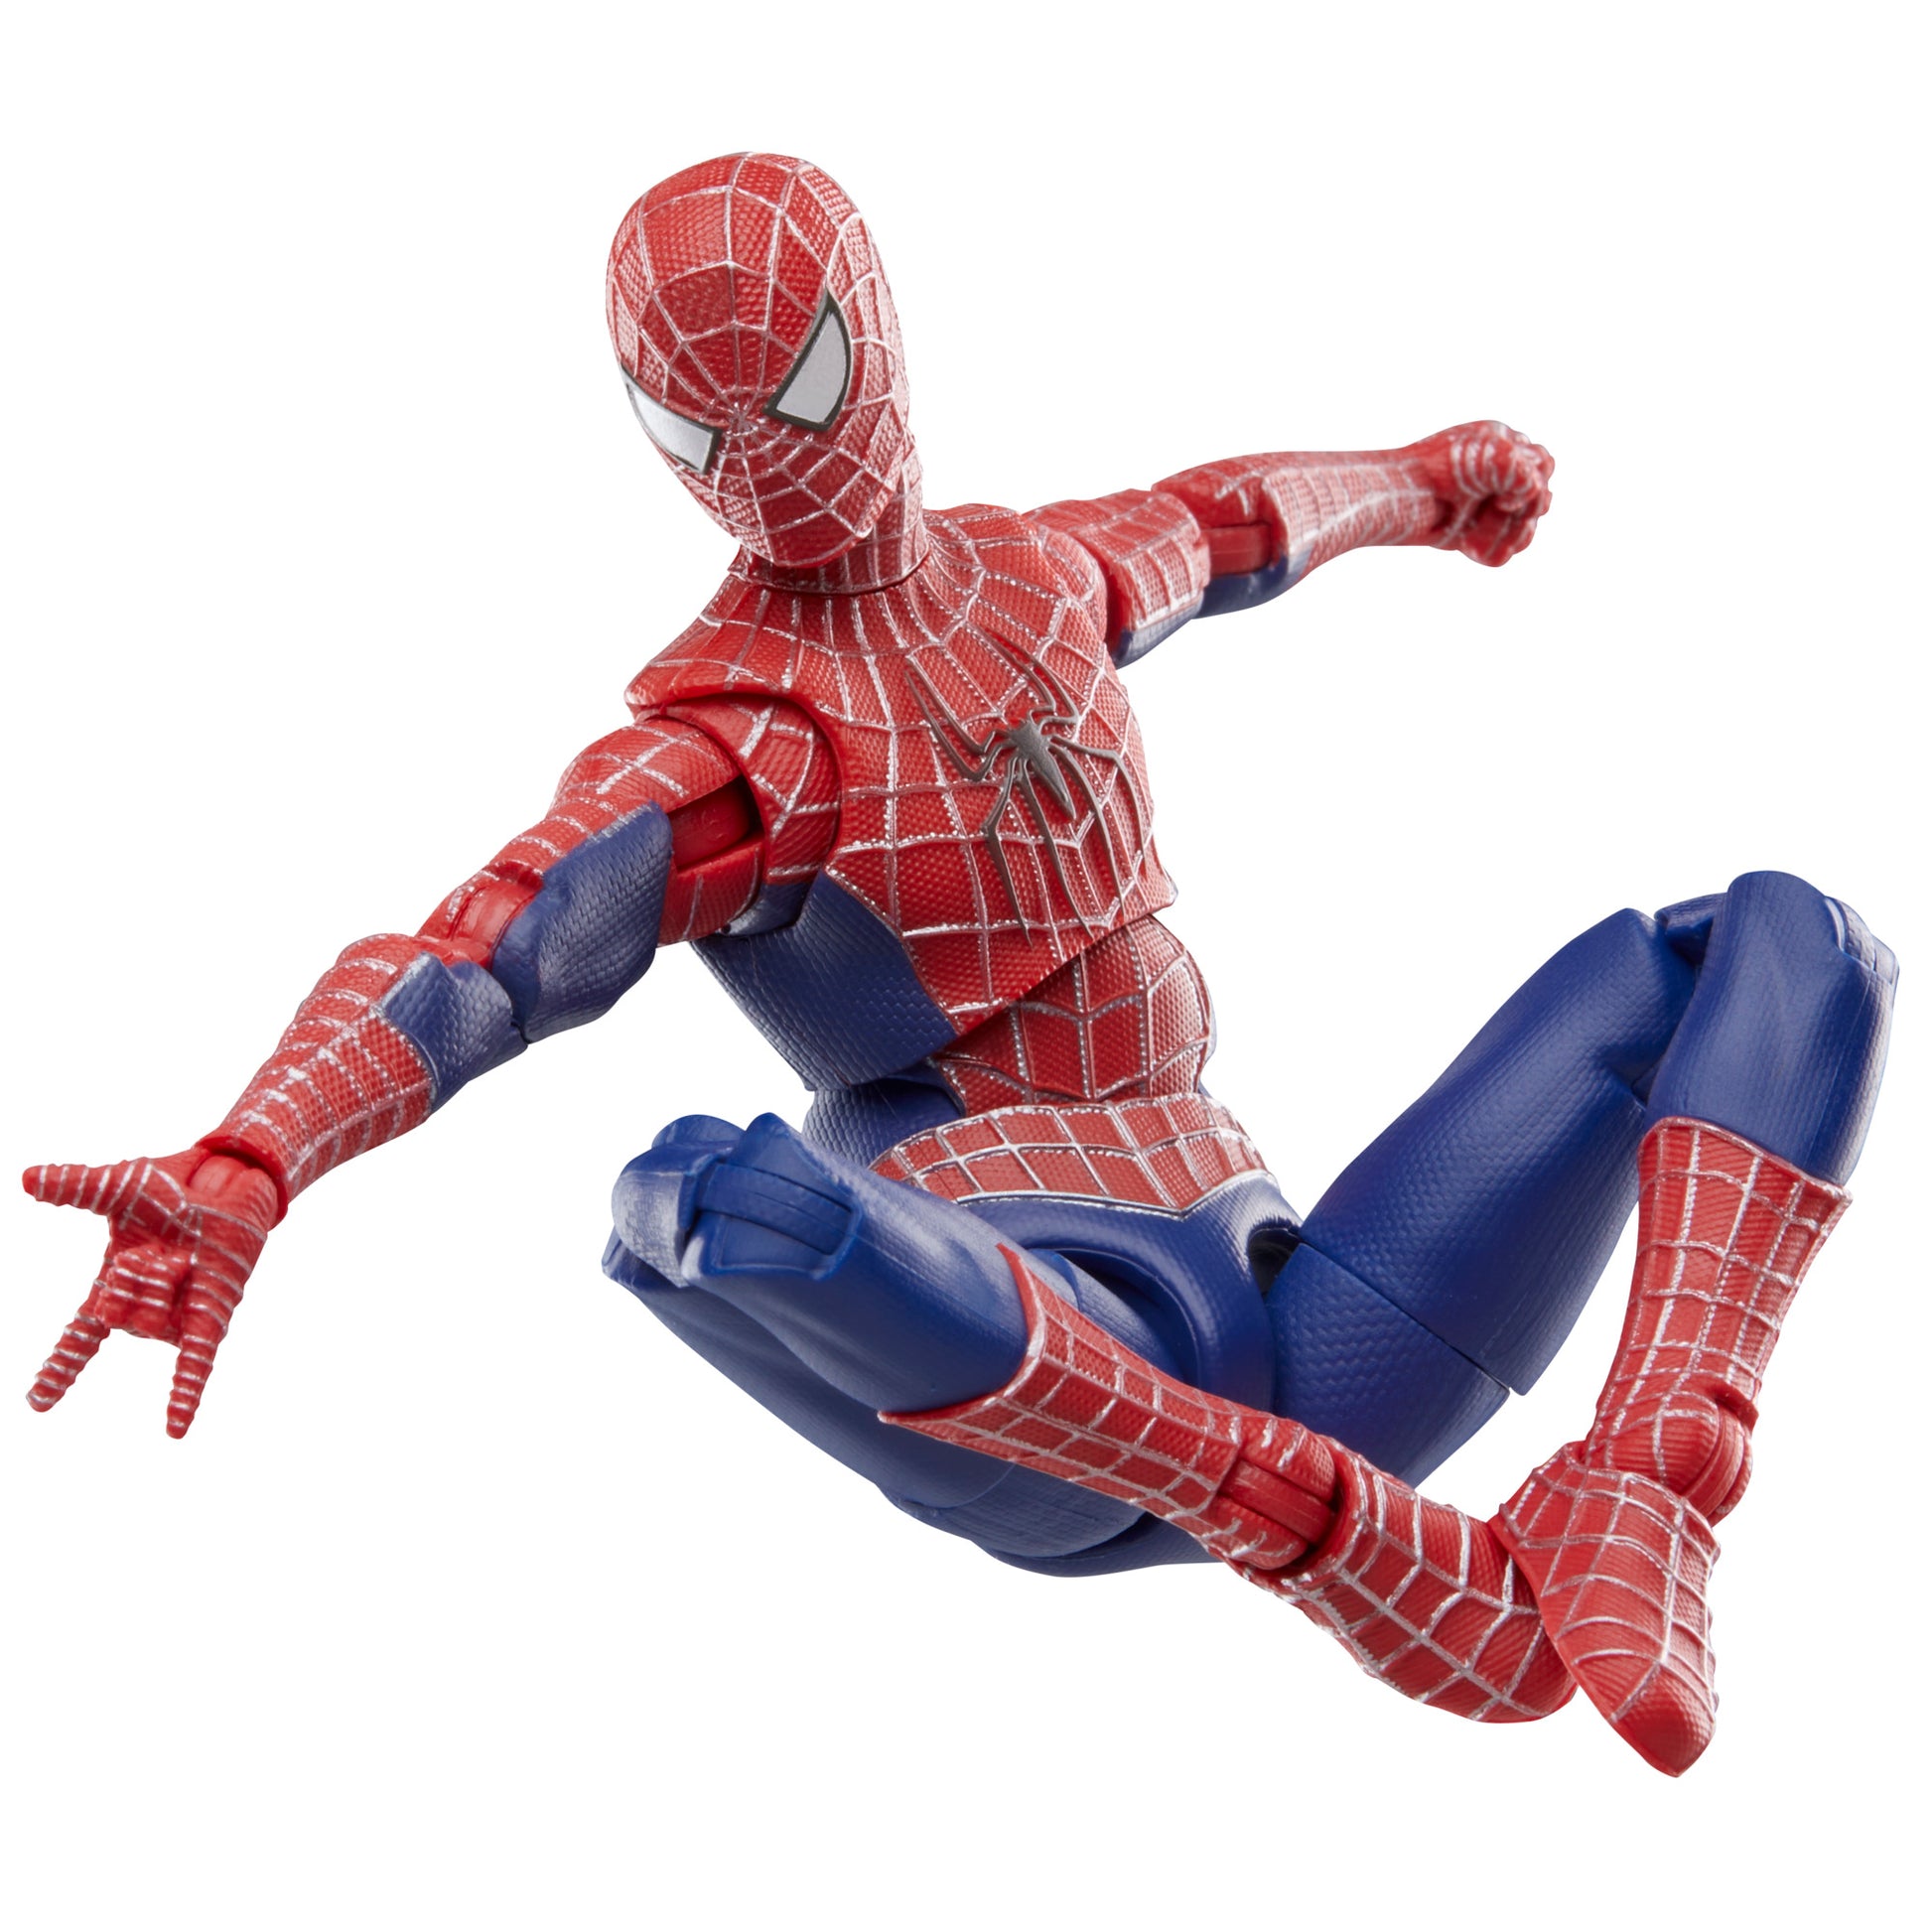 Marvel Legends Series Friendly Neighborhood Spider-Man, 6 Marvel Legends Action Figures HERETOSERVEYOU